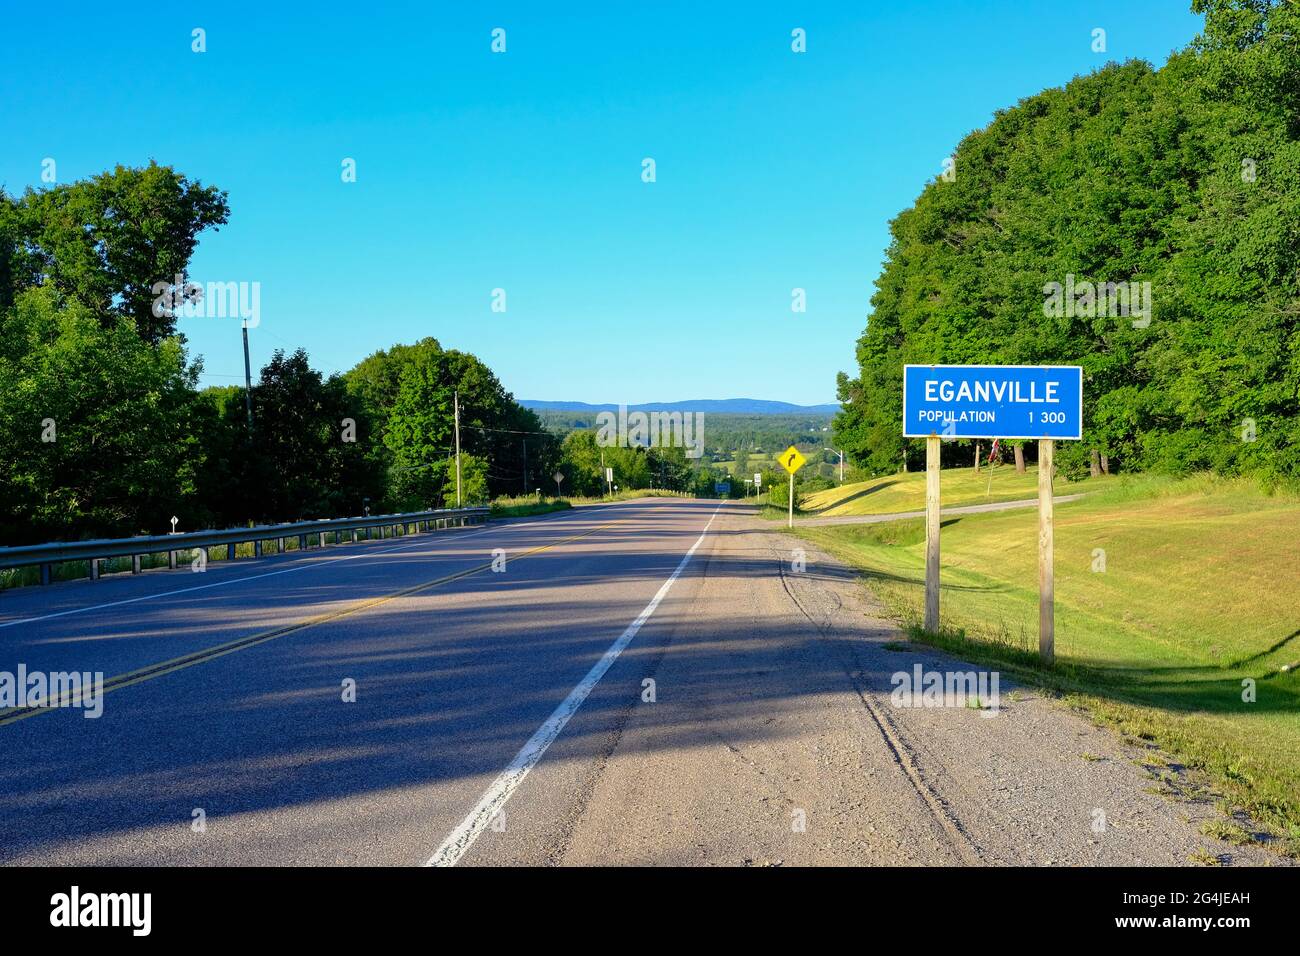 Eganville, Ontario, Canada - 16 giugno 2021: Un cartello sull'autostrada 60 che entra a Eganville mostra la popolazione della città di 1300 abitanti. Foto Stock